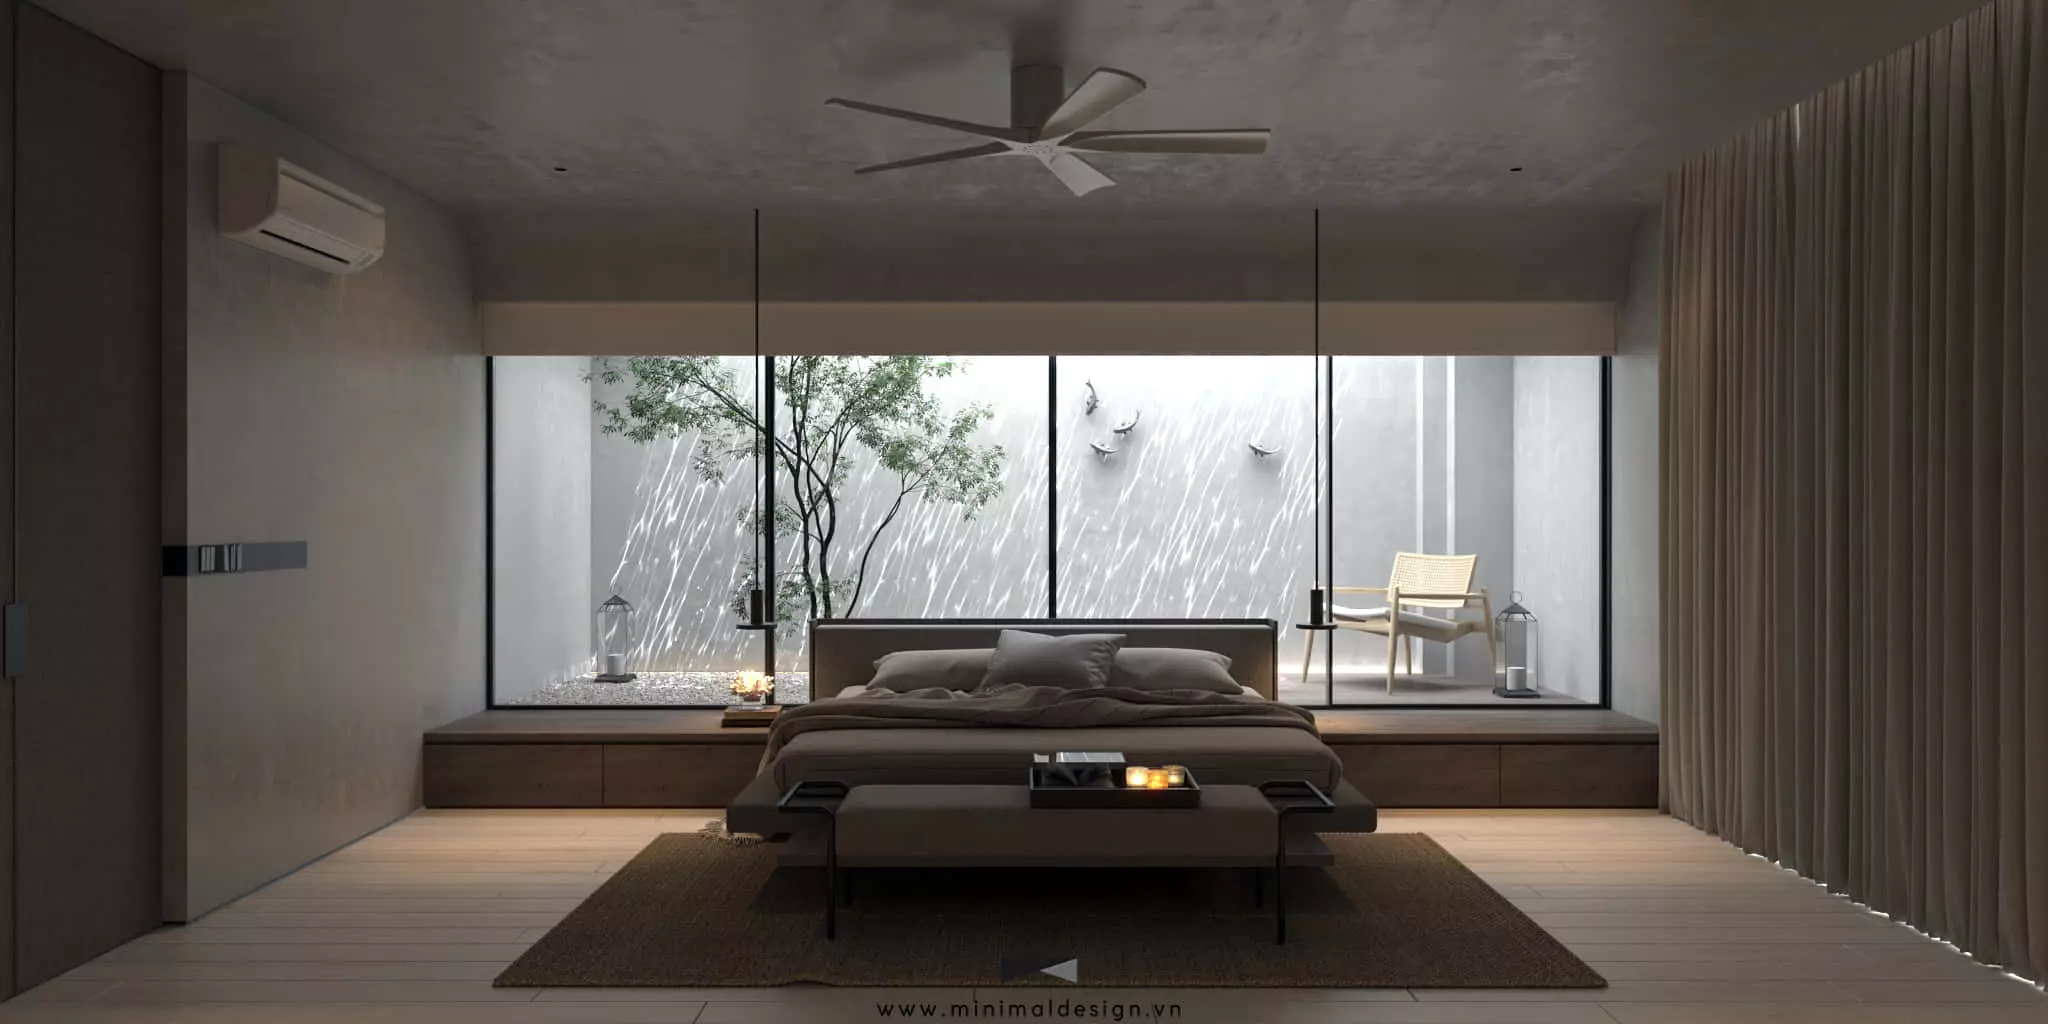 Thiết kế nội thất biệt thự tối giản thêm sang trọng và thể hiện đẳng cấp của gia chủ thông qua vật liệu được sử dụng tạo nên vẻ đẹp của không gian.